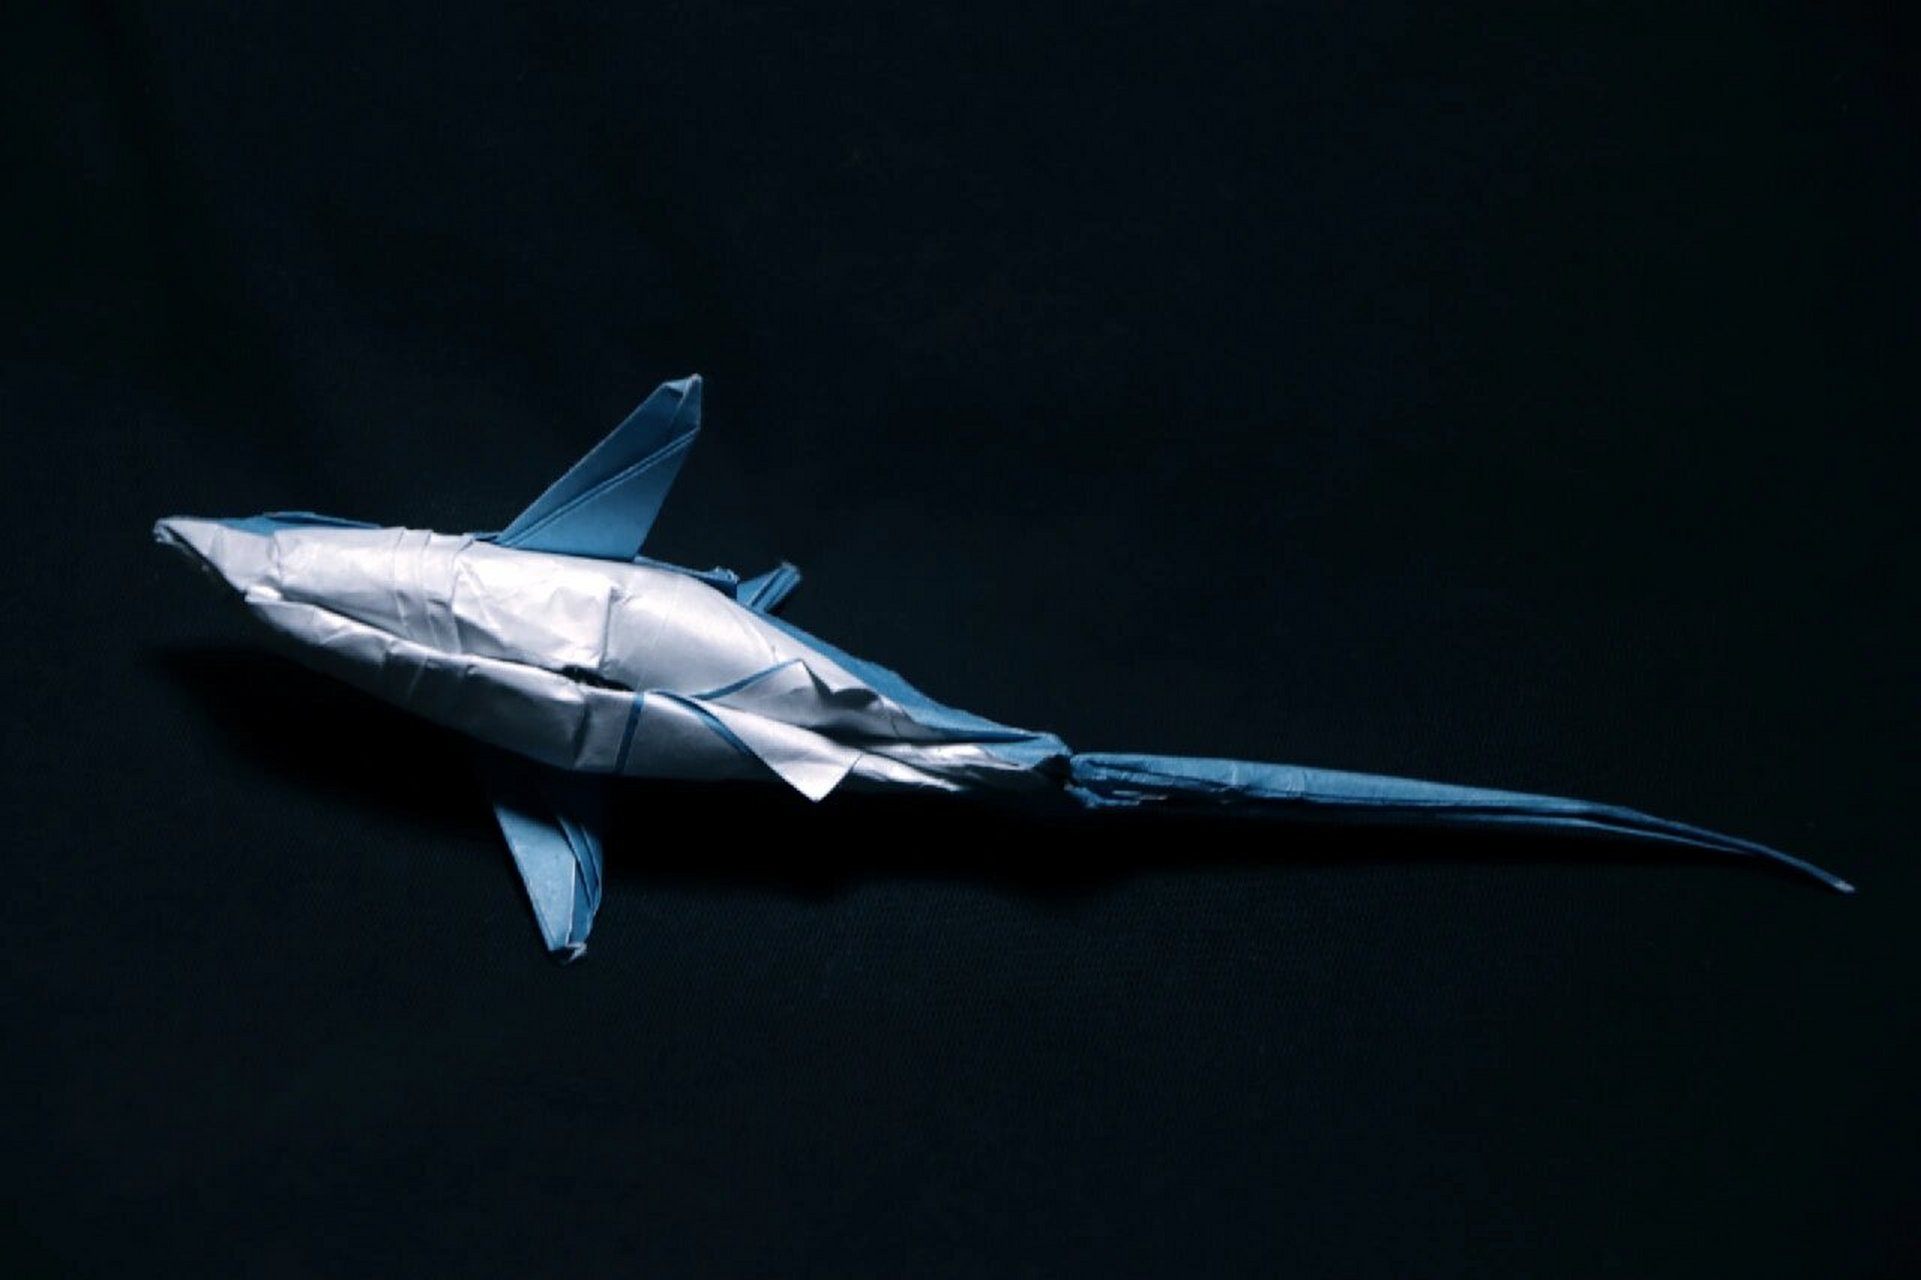 高难度鲨鱼折纸图片